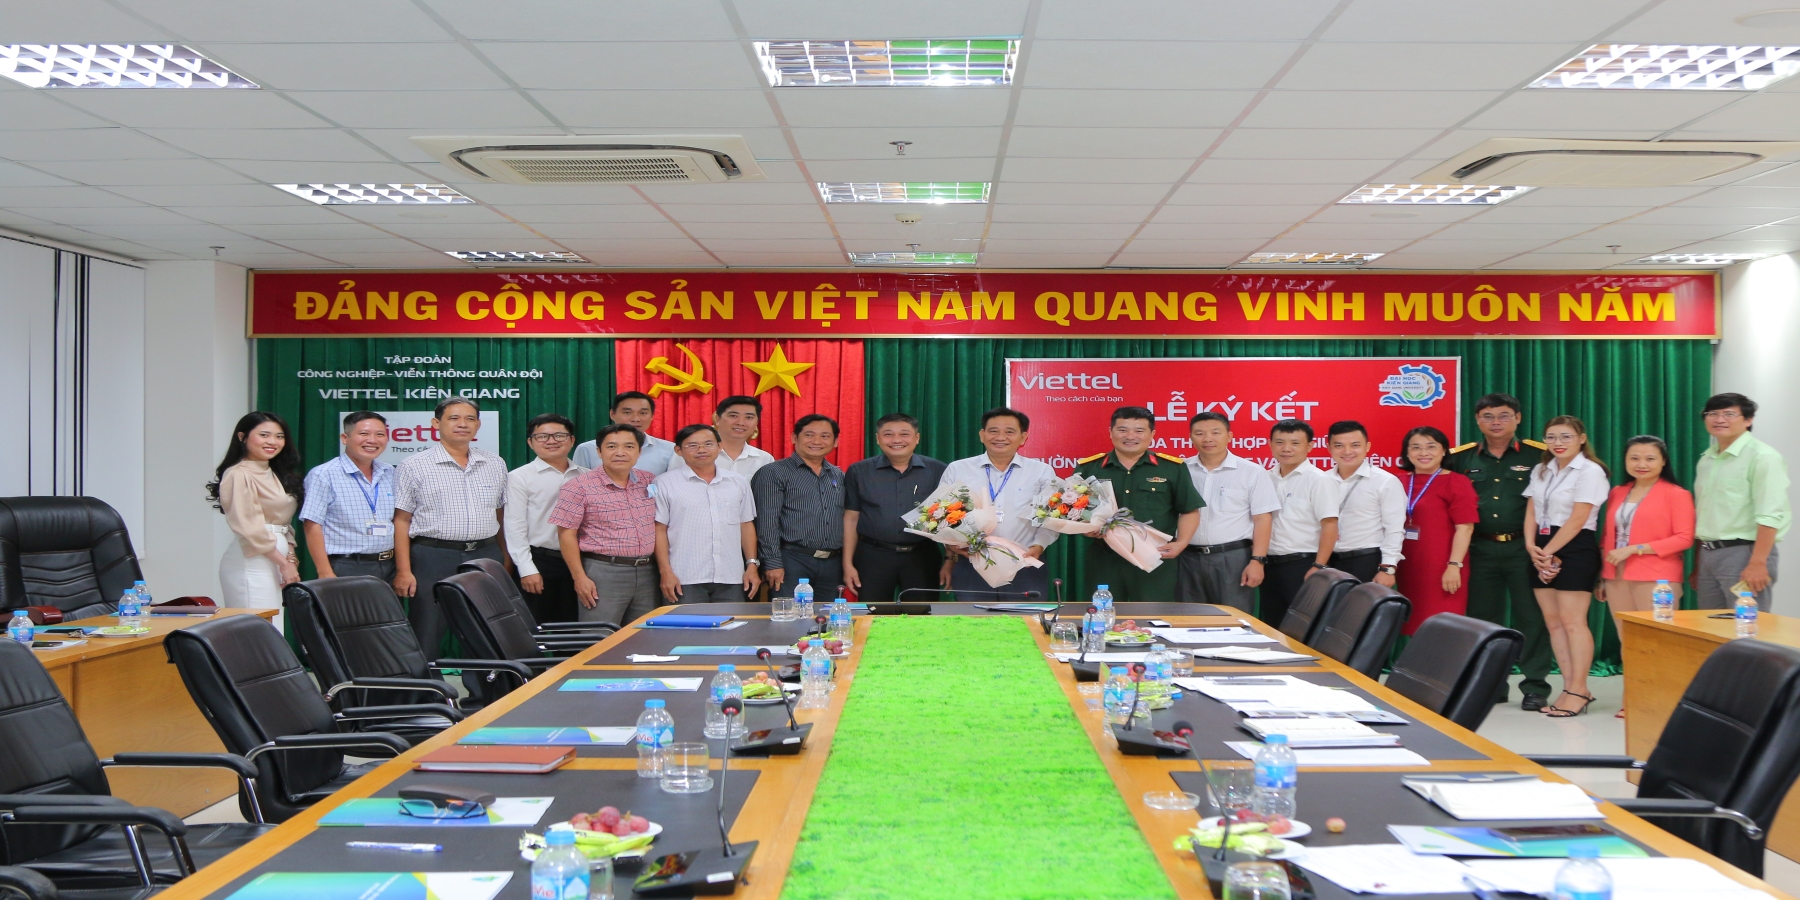 Trường Đại học Kiên Giang và Viettel Kiên Giang hợp tác chiến lược đẩy mạnh ứng dụng công nghệ thông tin – viễn thông